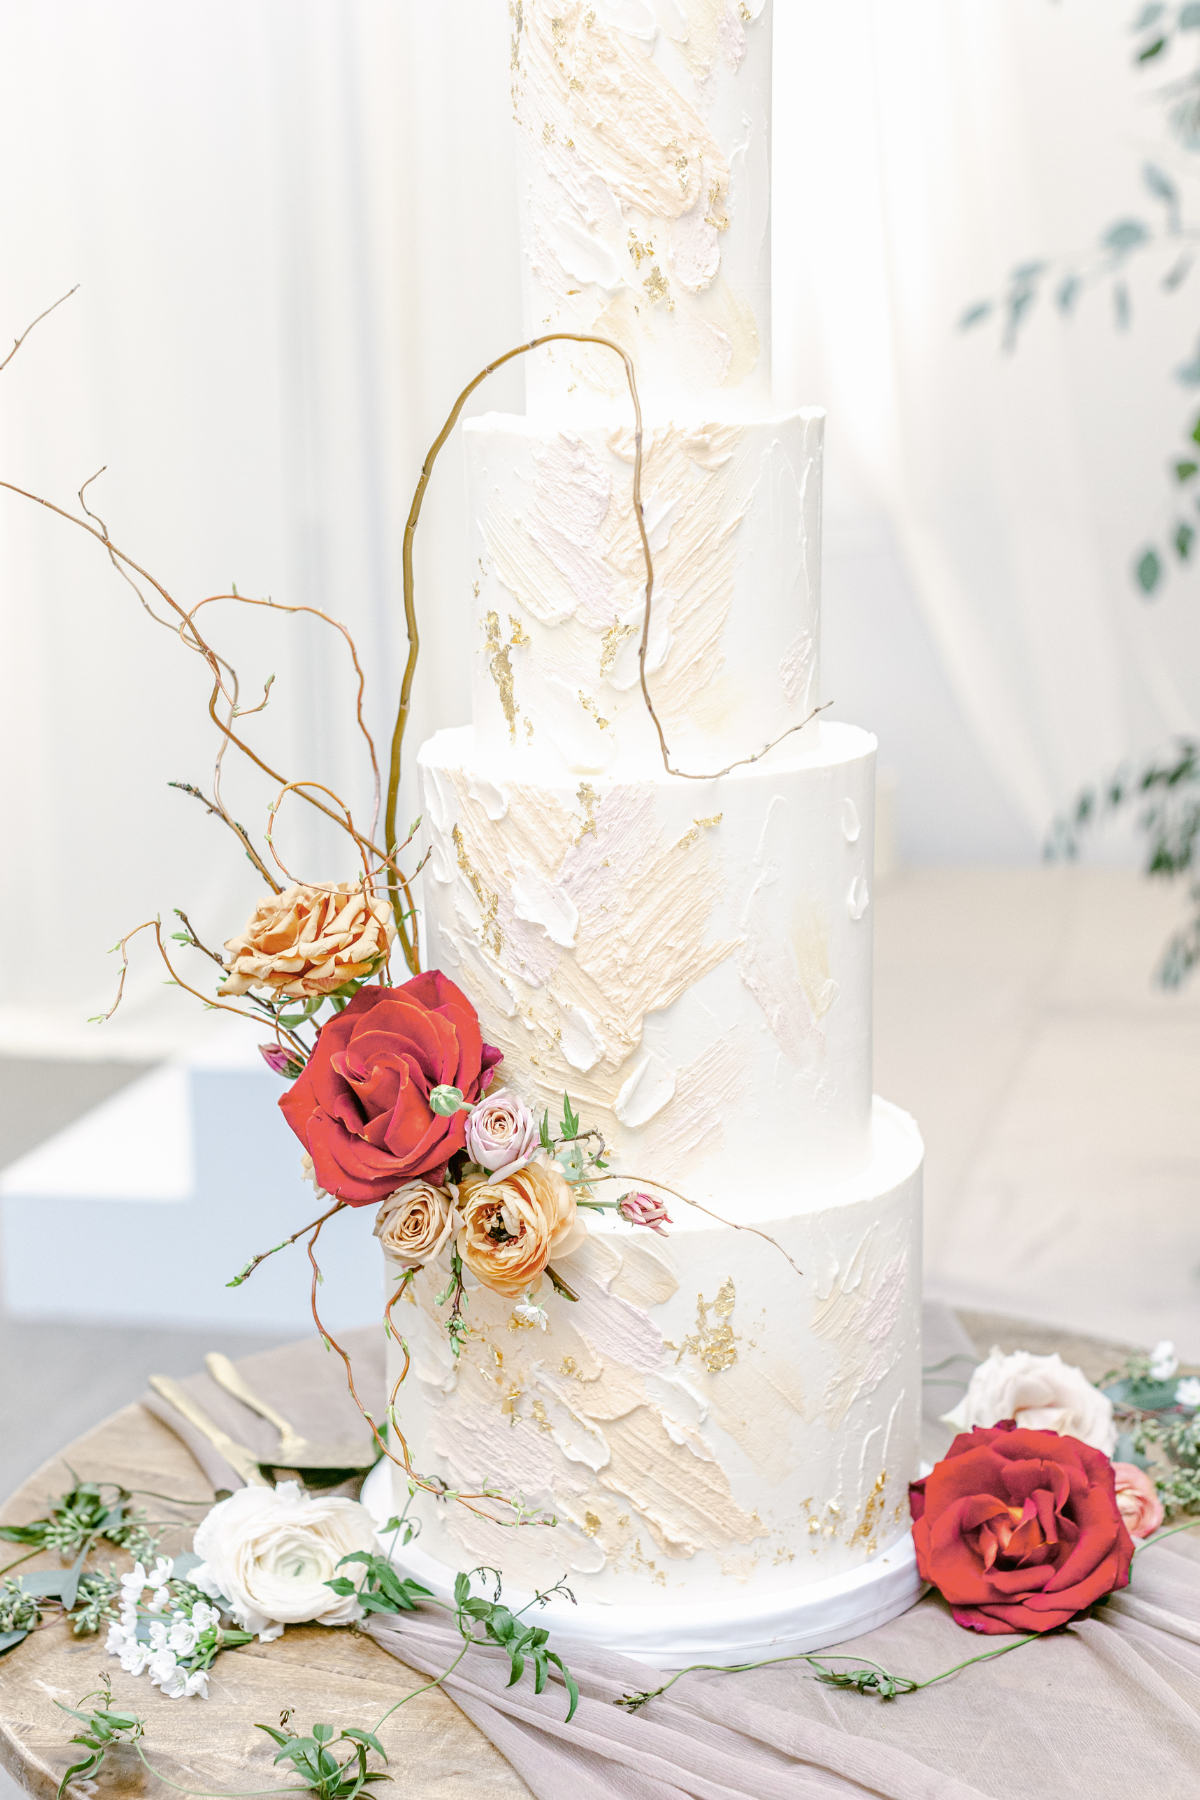 kavita-mohan-ivory-gold-orange-wedding-reception-cake-roses-willow